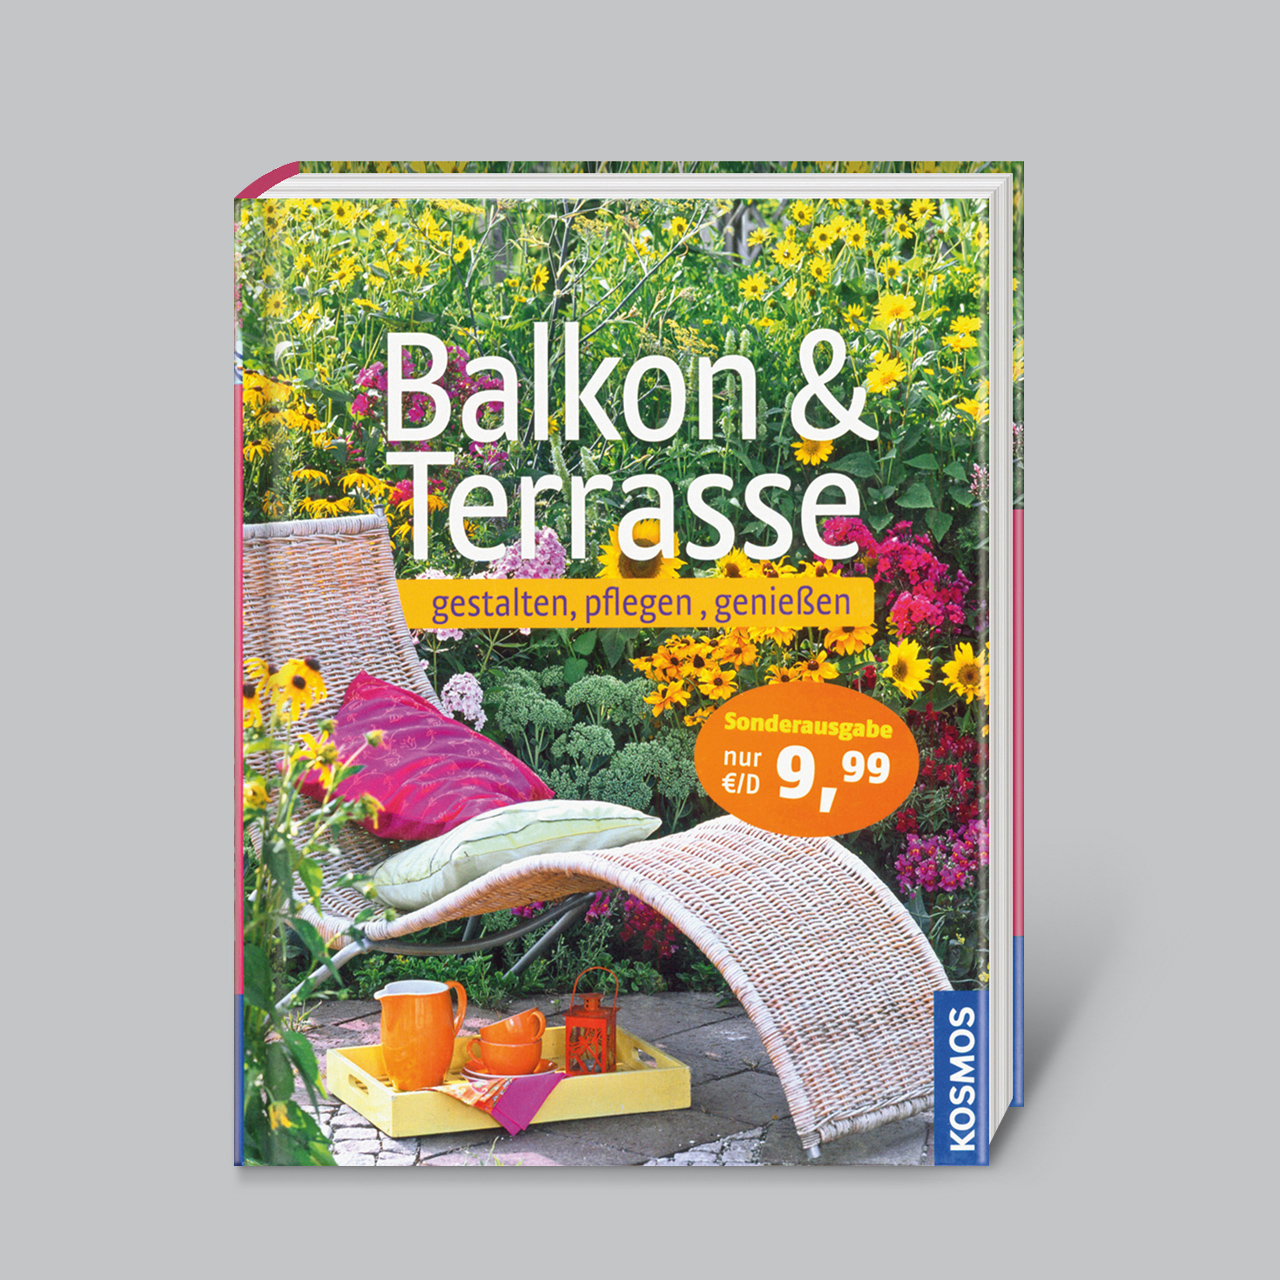 Terrasse Balkon Frisch Balkon & Terrasse Gestalten Pflegen Genießen